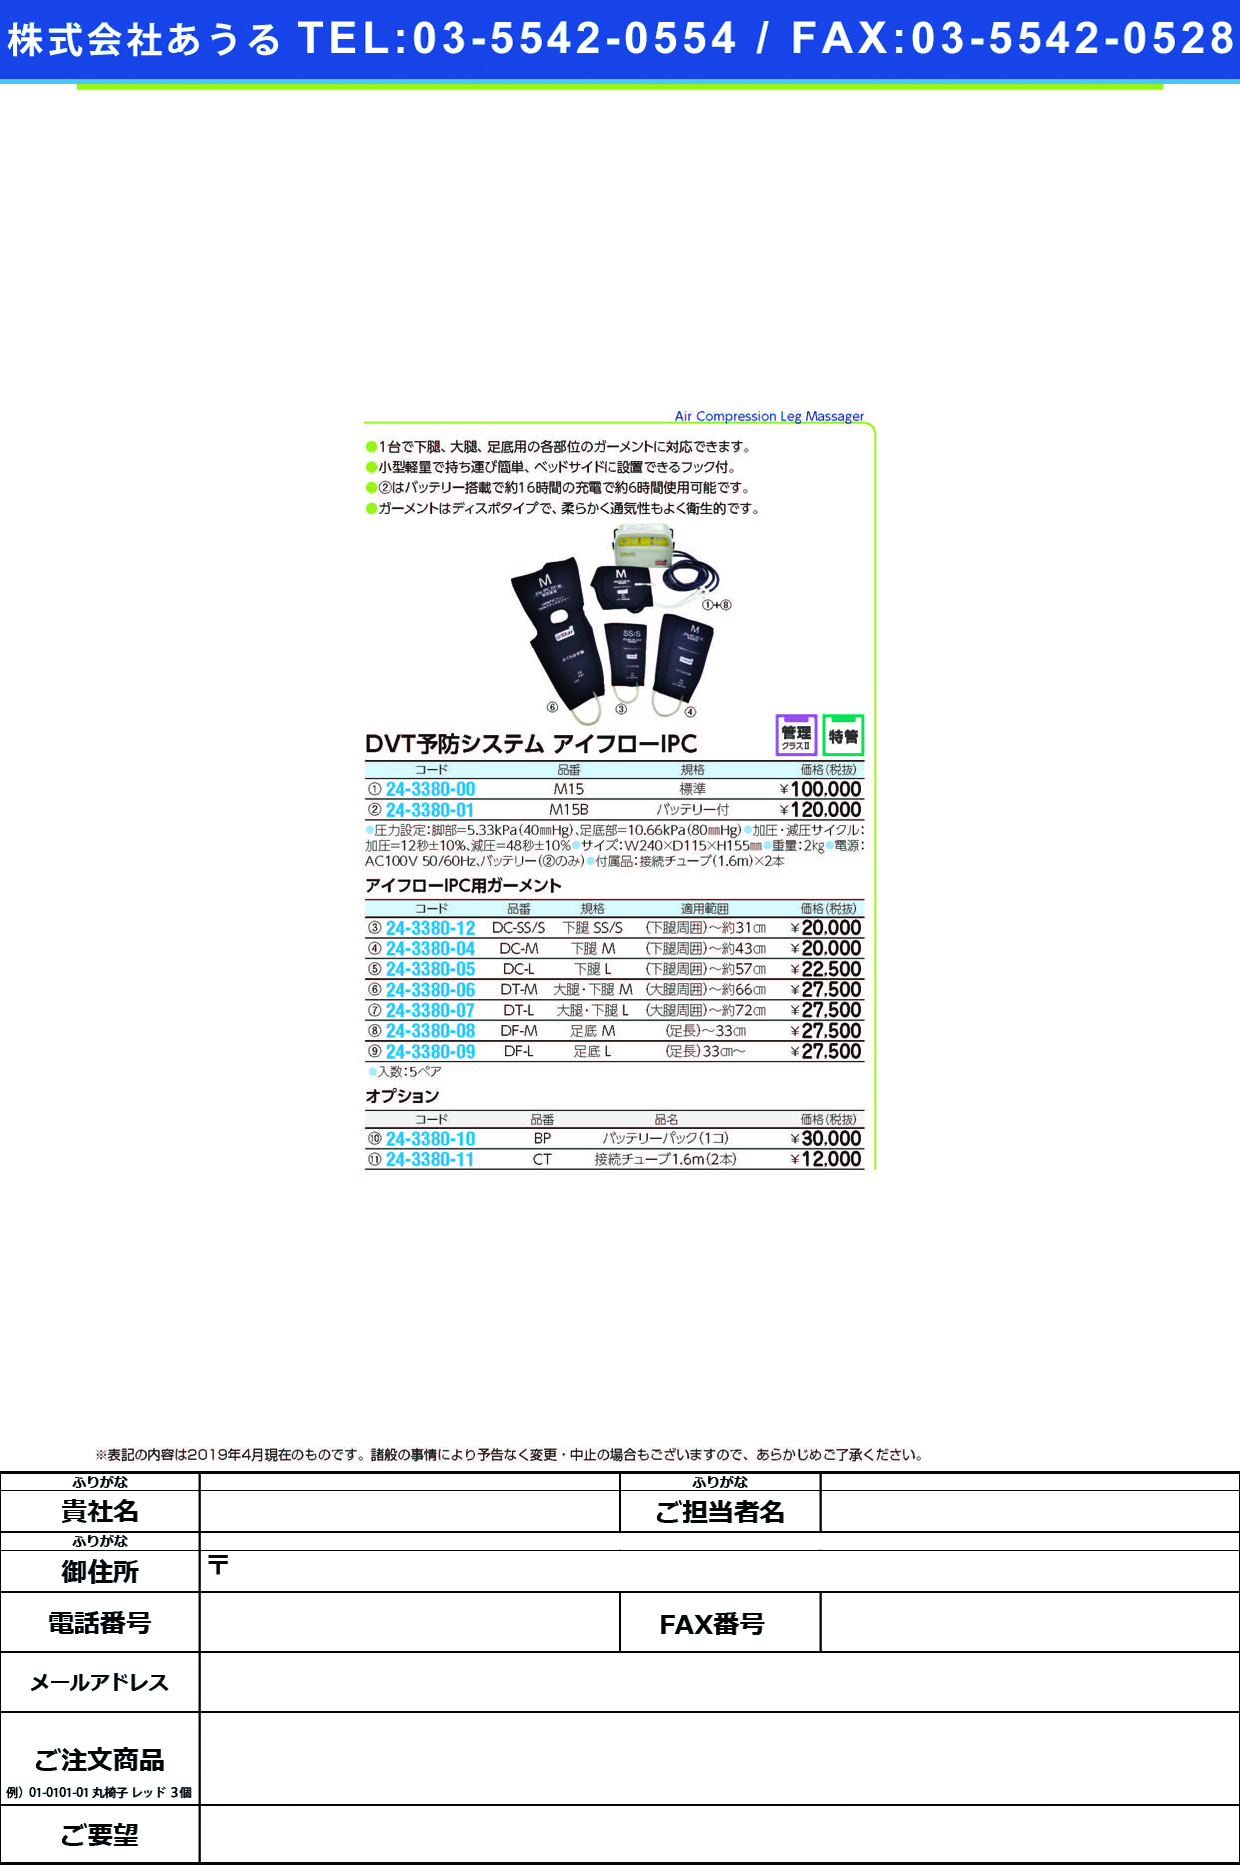 (24-3380-08)アイフローＩＰＣ用ガーメント DF-M(ｱｼｿﾞｺﾖｳM)5ﾍﾟｱ ｱｲﾌﾛｰIPCﾖｳｶﾞｰﾒﾝﾄ【1箱単位】【2019年カタログ商品】